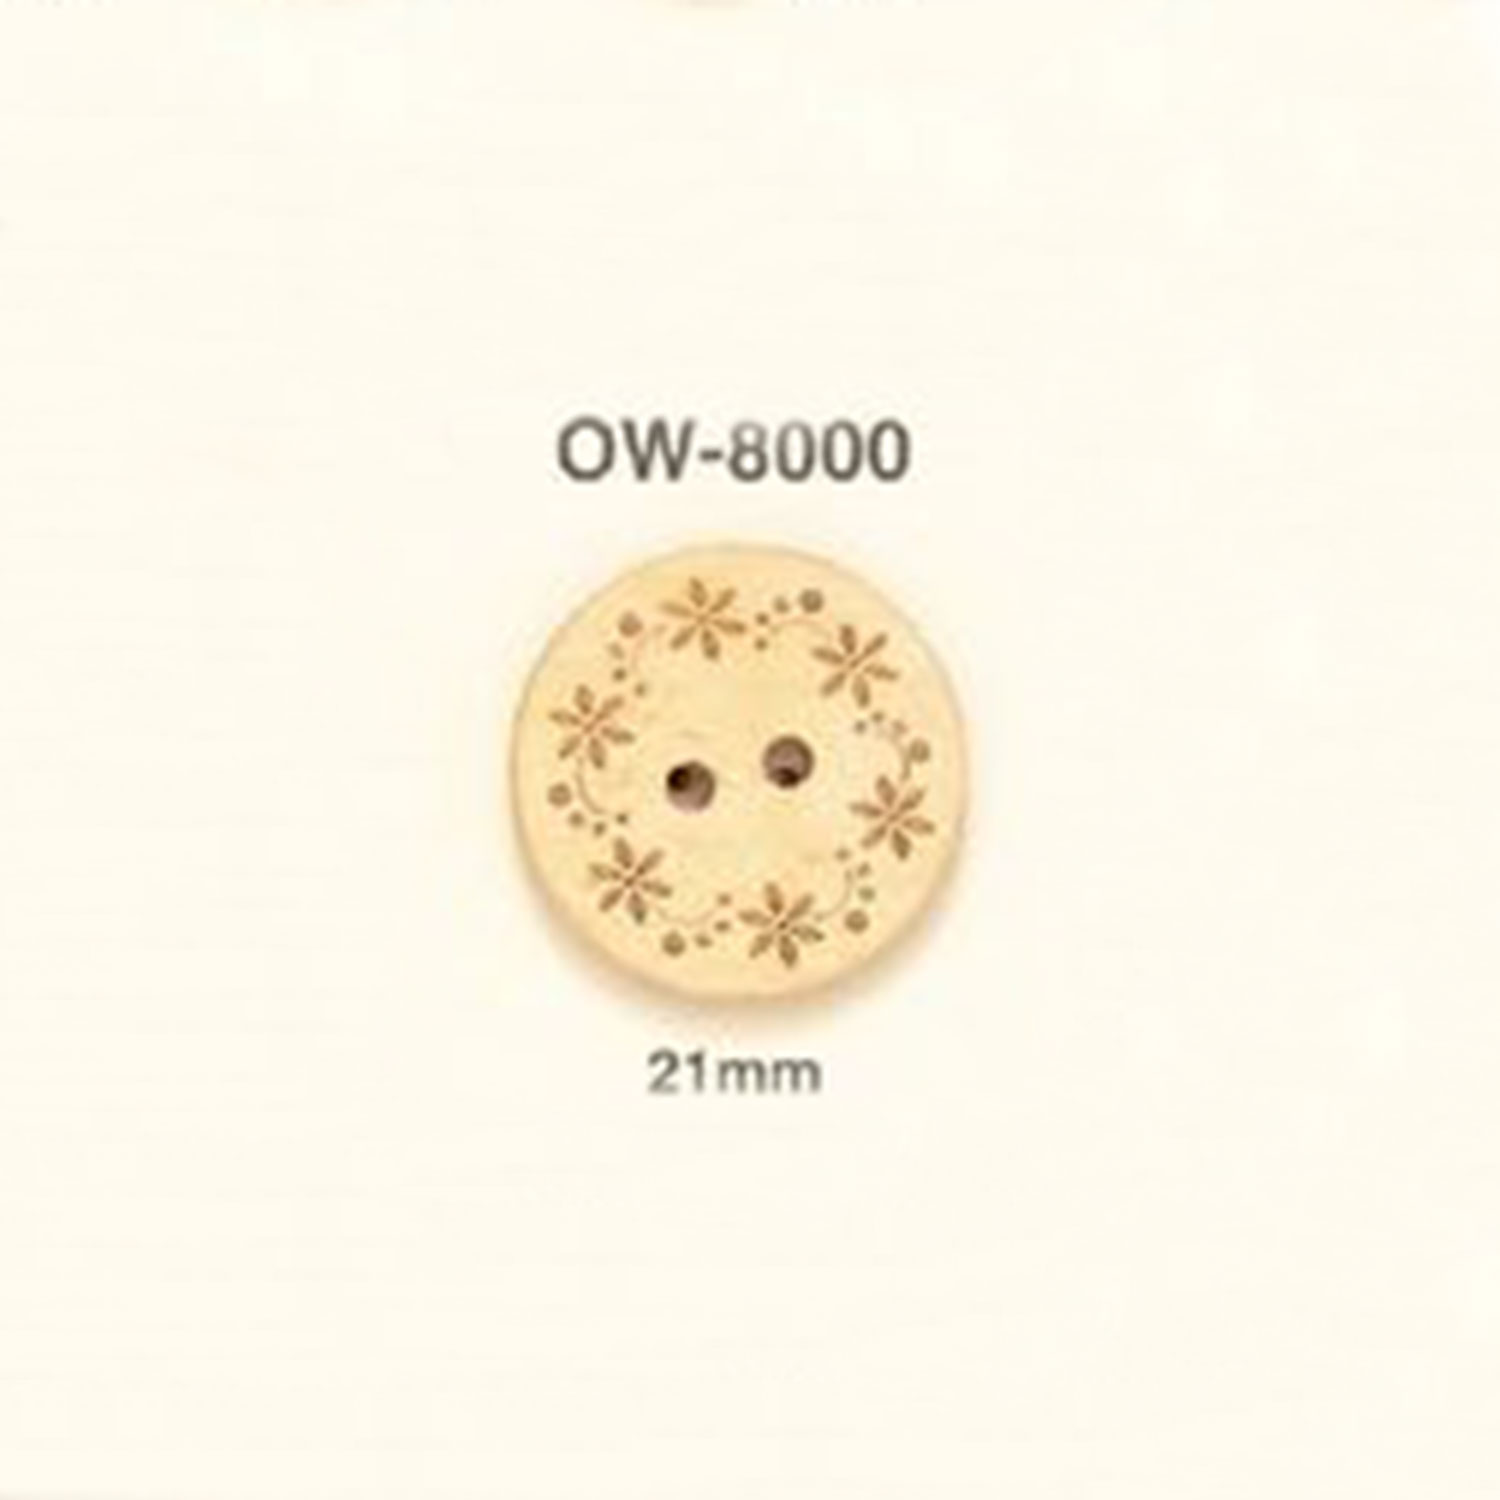 OW-8000 Botón De Madera Con Motivos Florales IRIS